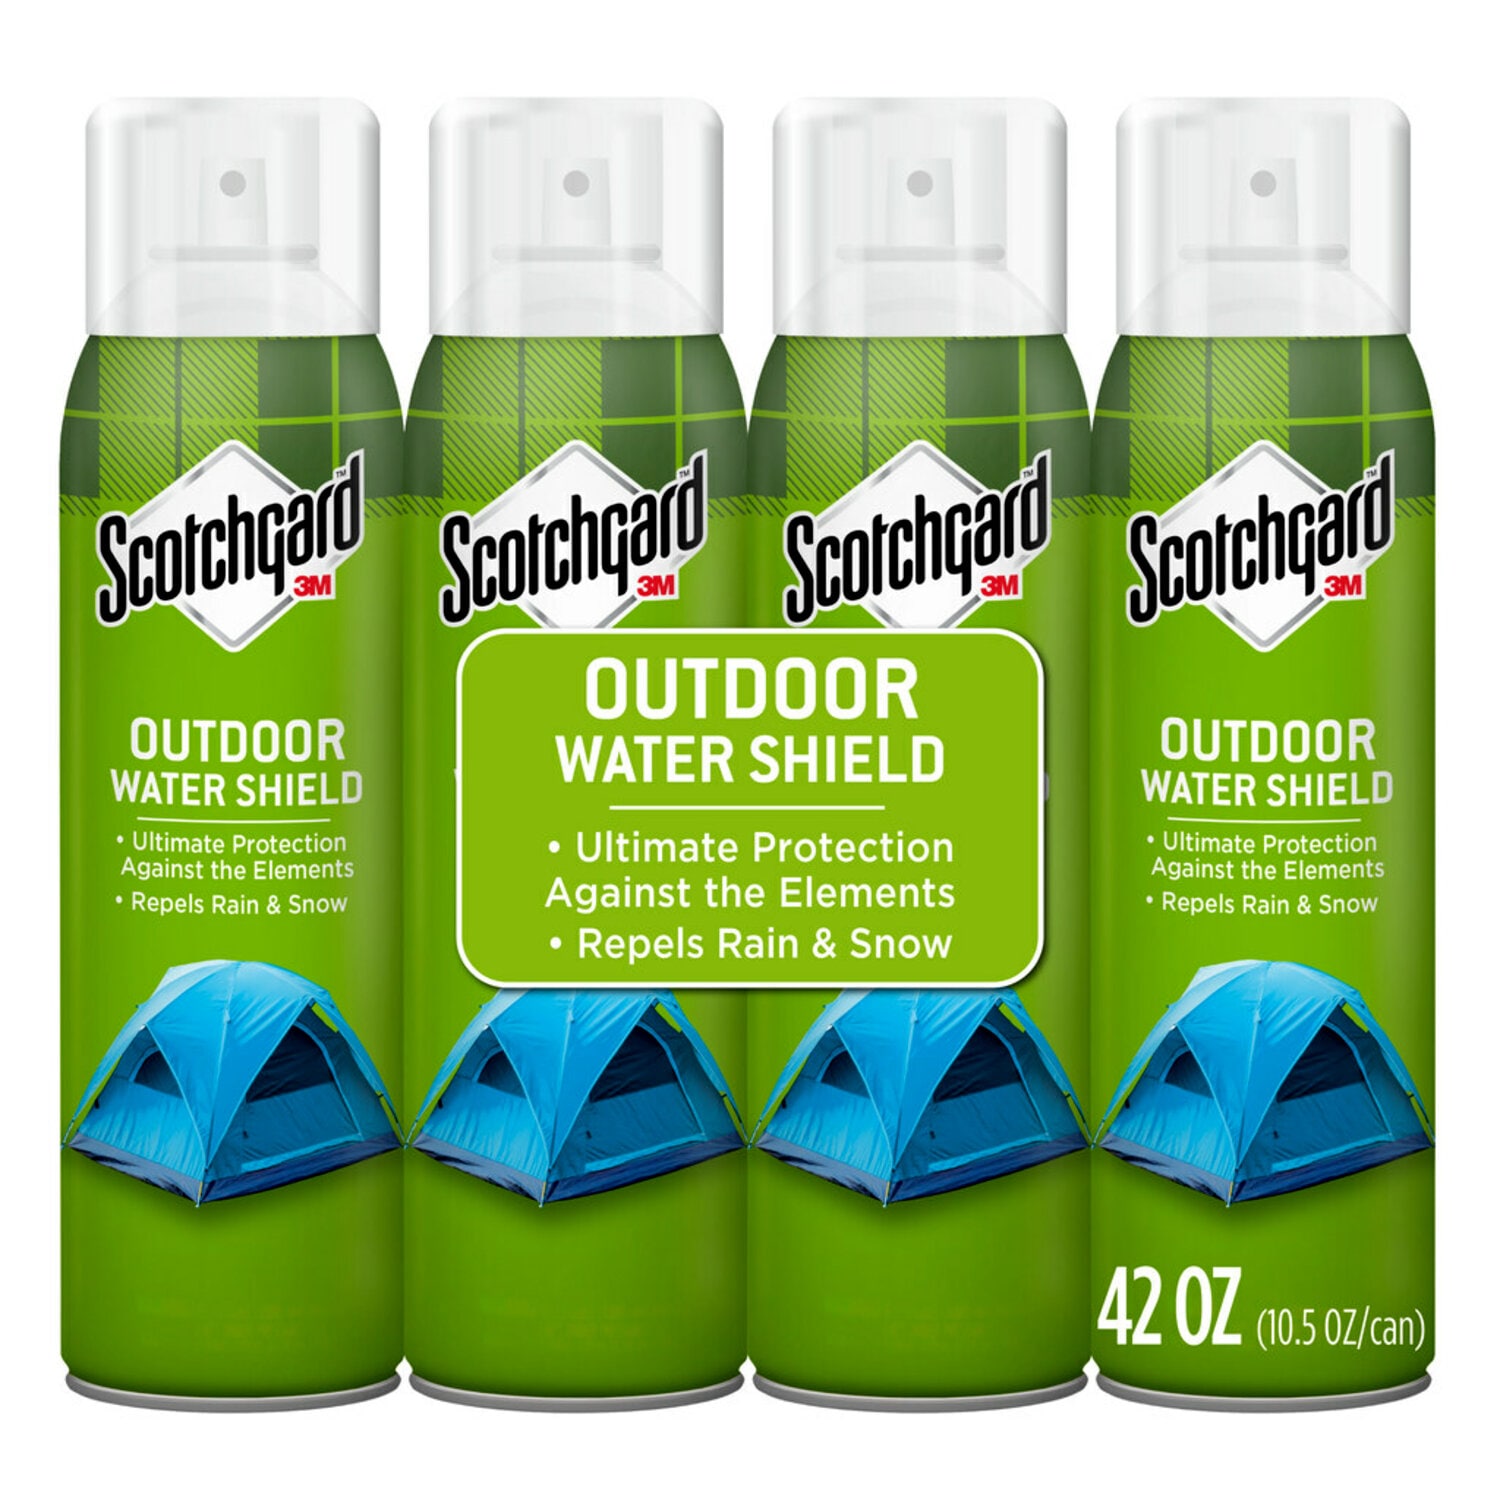 7010412473 - Scotchgard Outdoor Water Shield 5020-10-4, 10.5 oz (297 g)